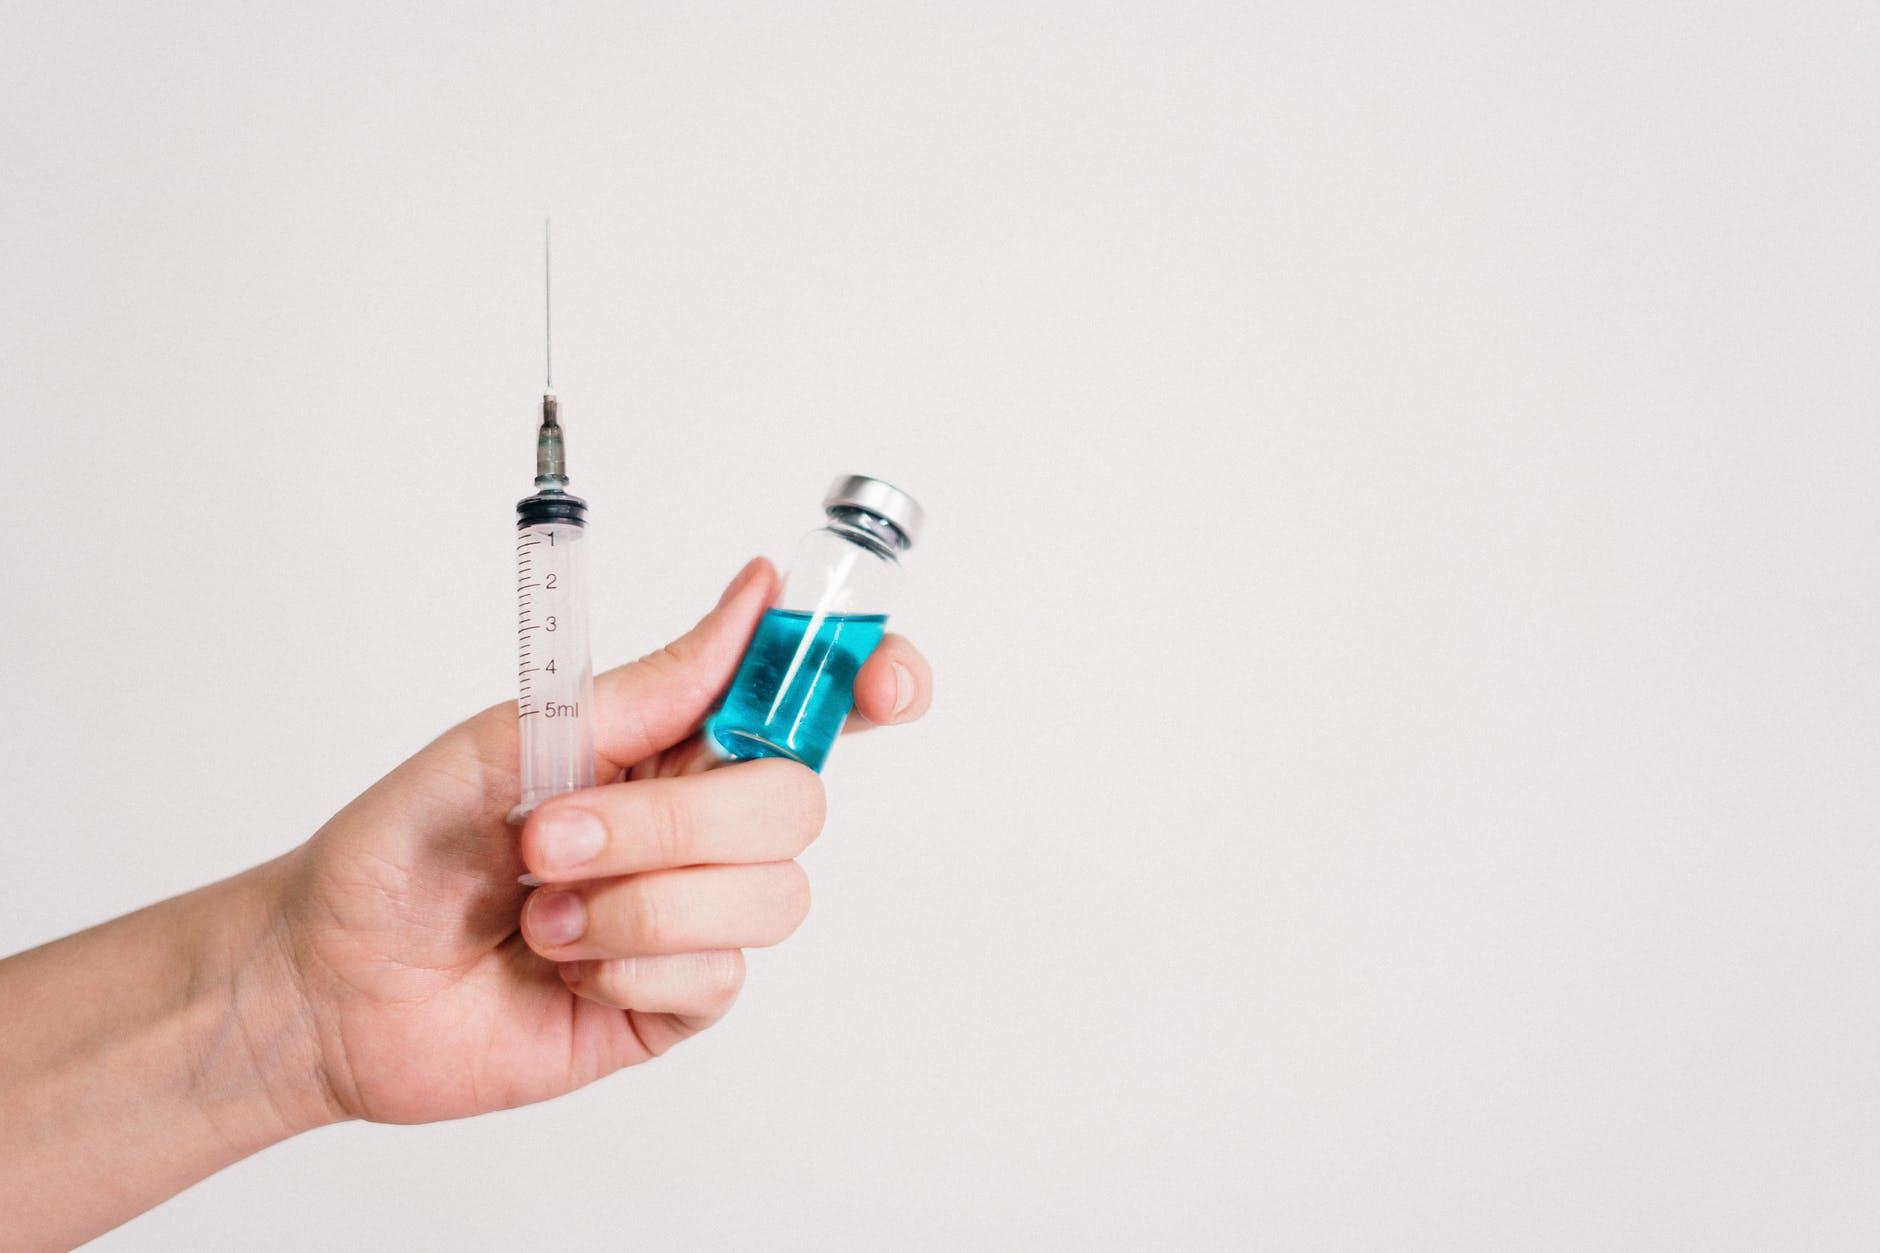 pexels photo 3952241 Variants du coronavirus : « Peut-être un jour faudra-t-il vacciner les enfants », déclare Alain Fisher